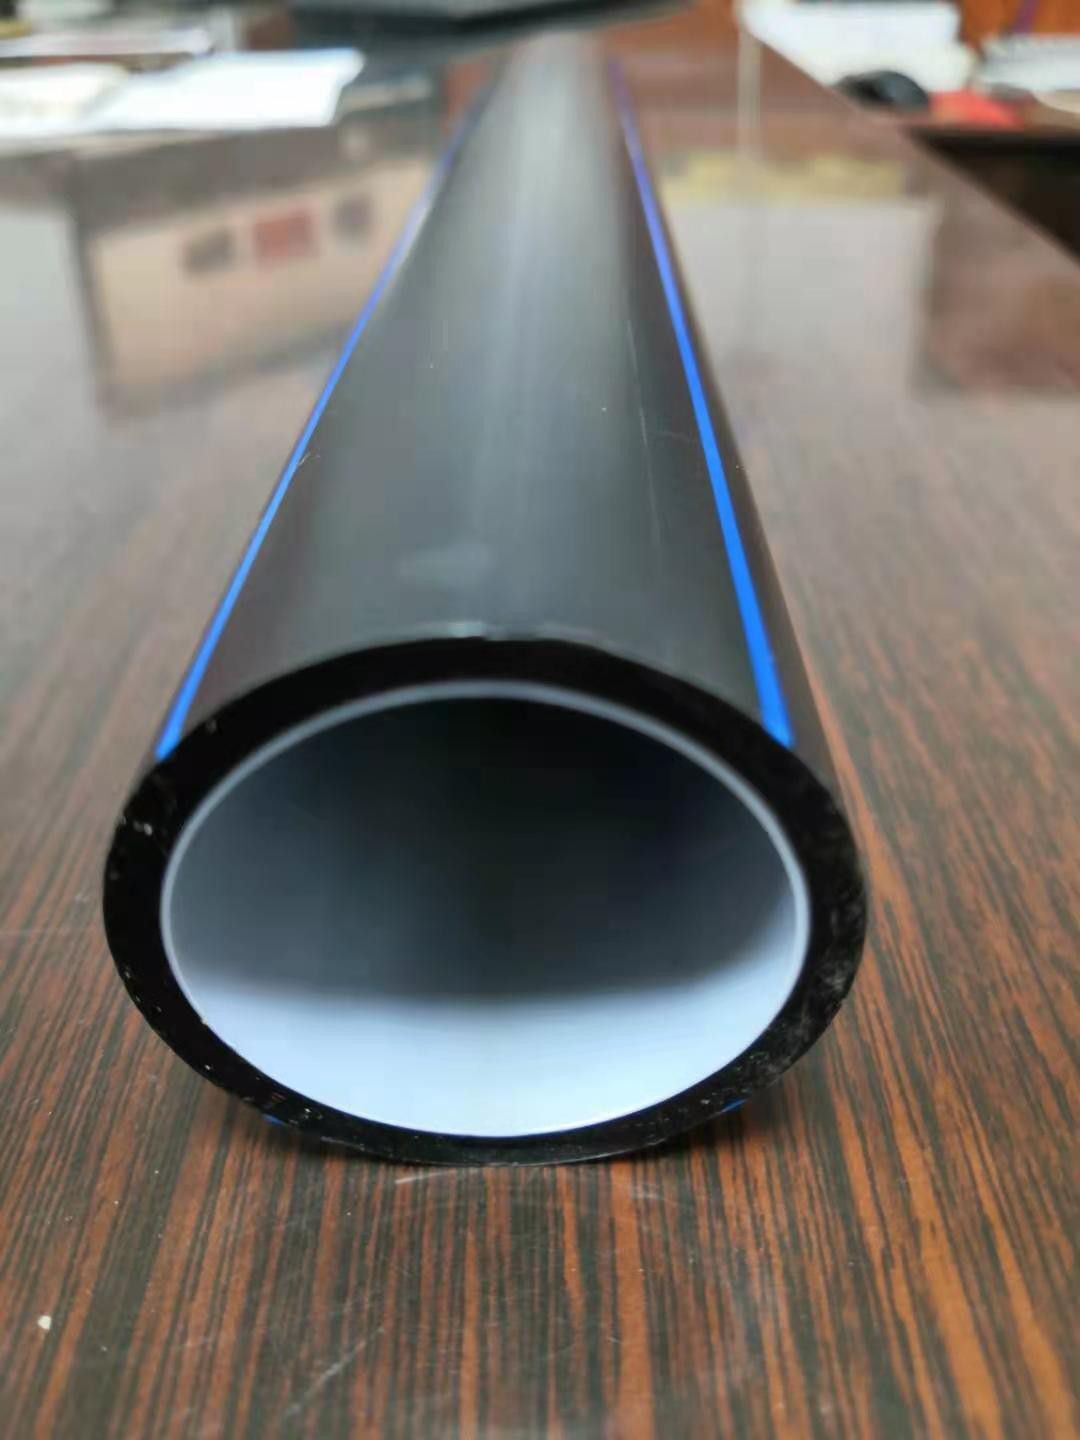 扬州市新国标预应力塑料波纹管临近周末国内价格迎来了又一次普涨的行